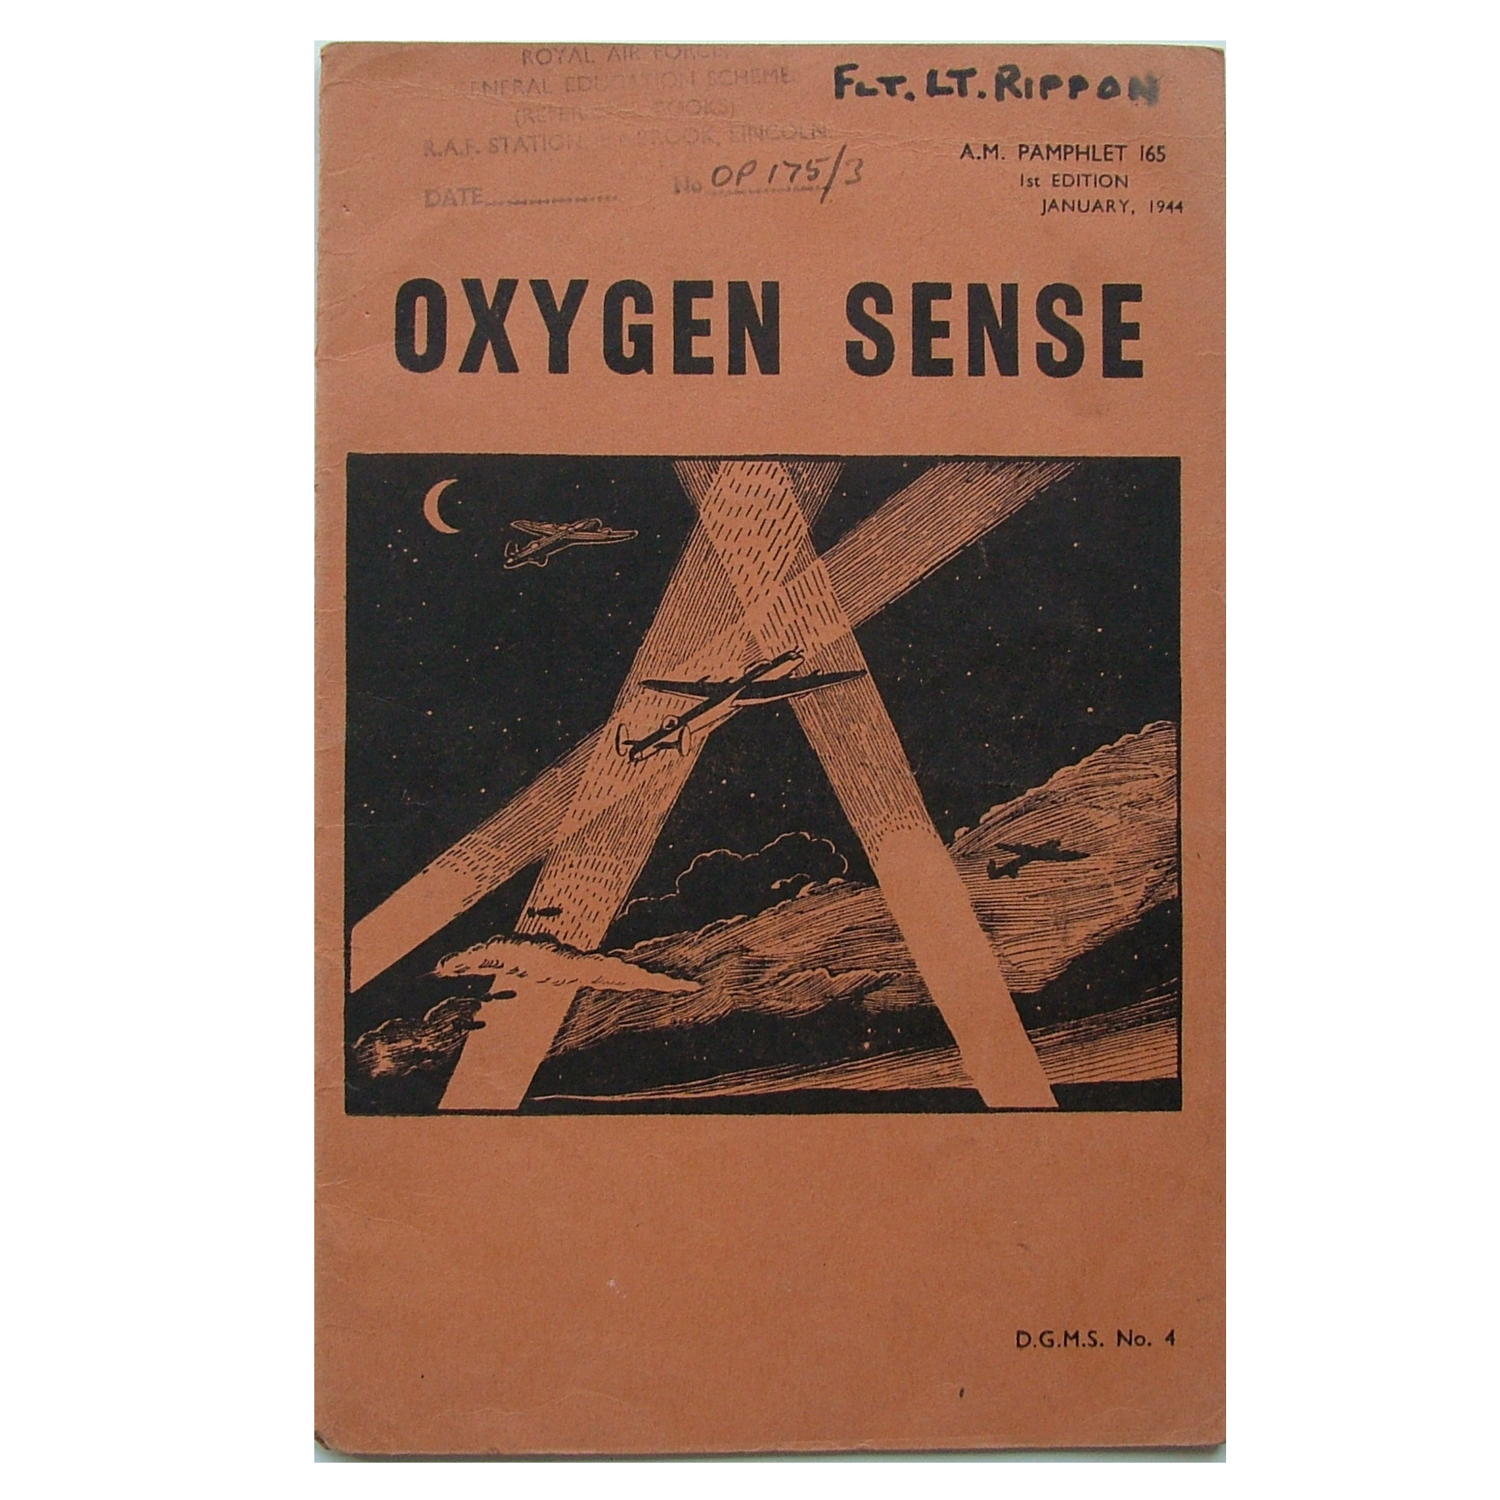 A.M. pamphlet - oxygen sense